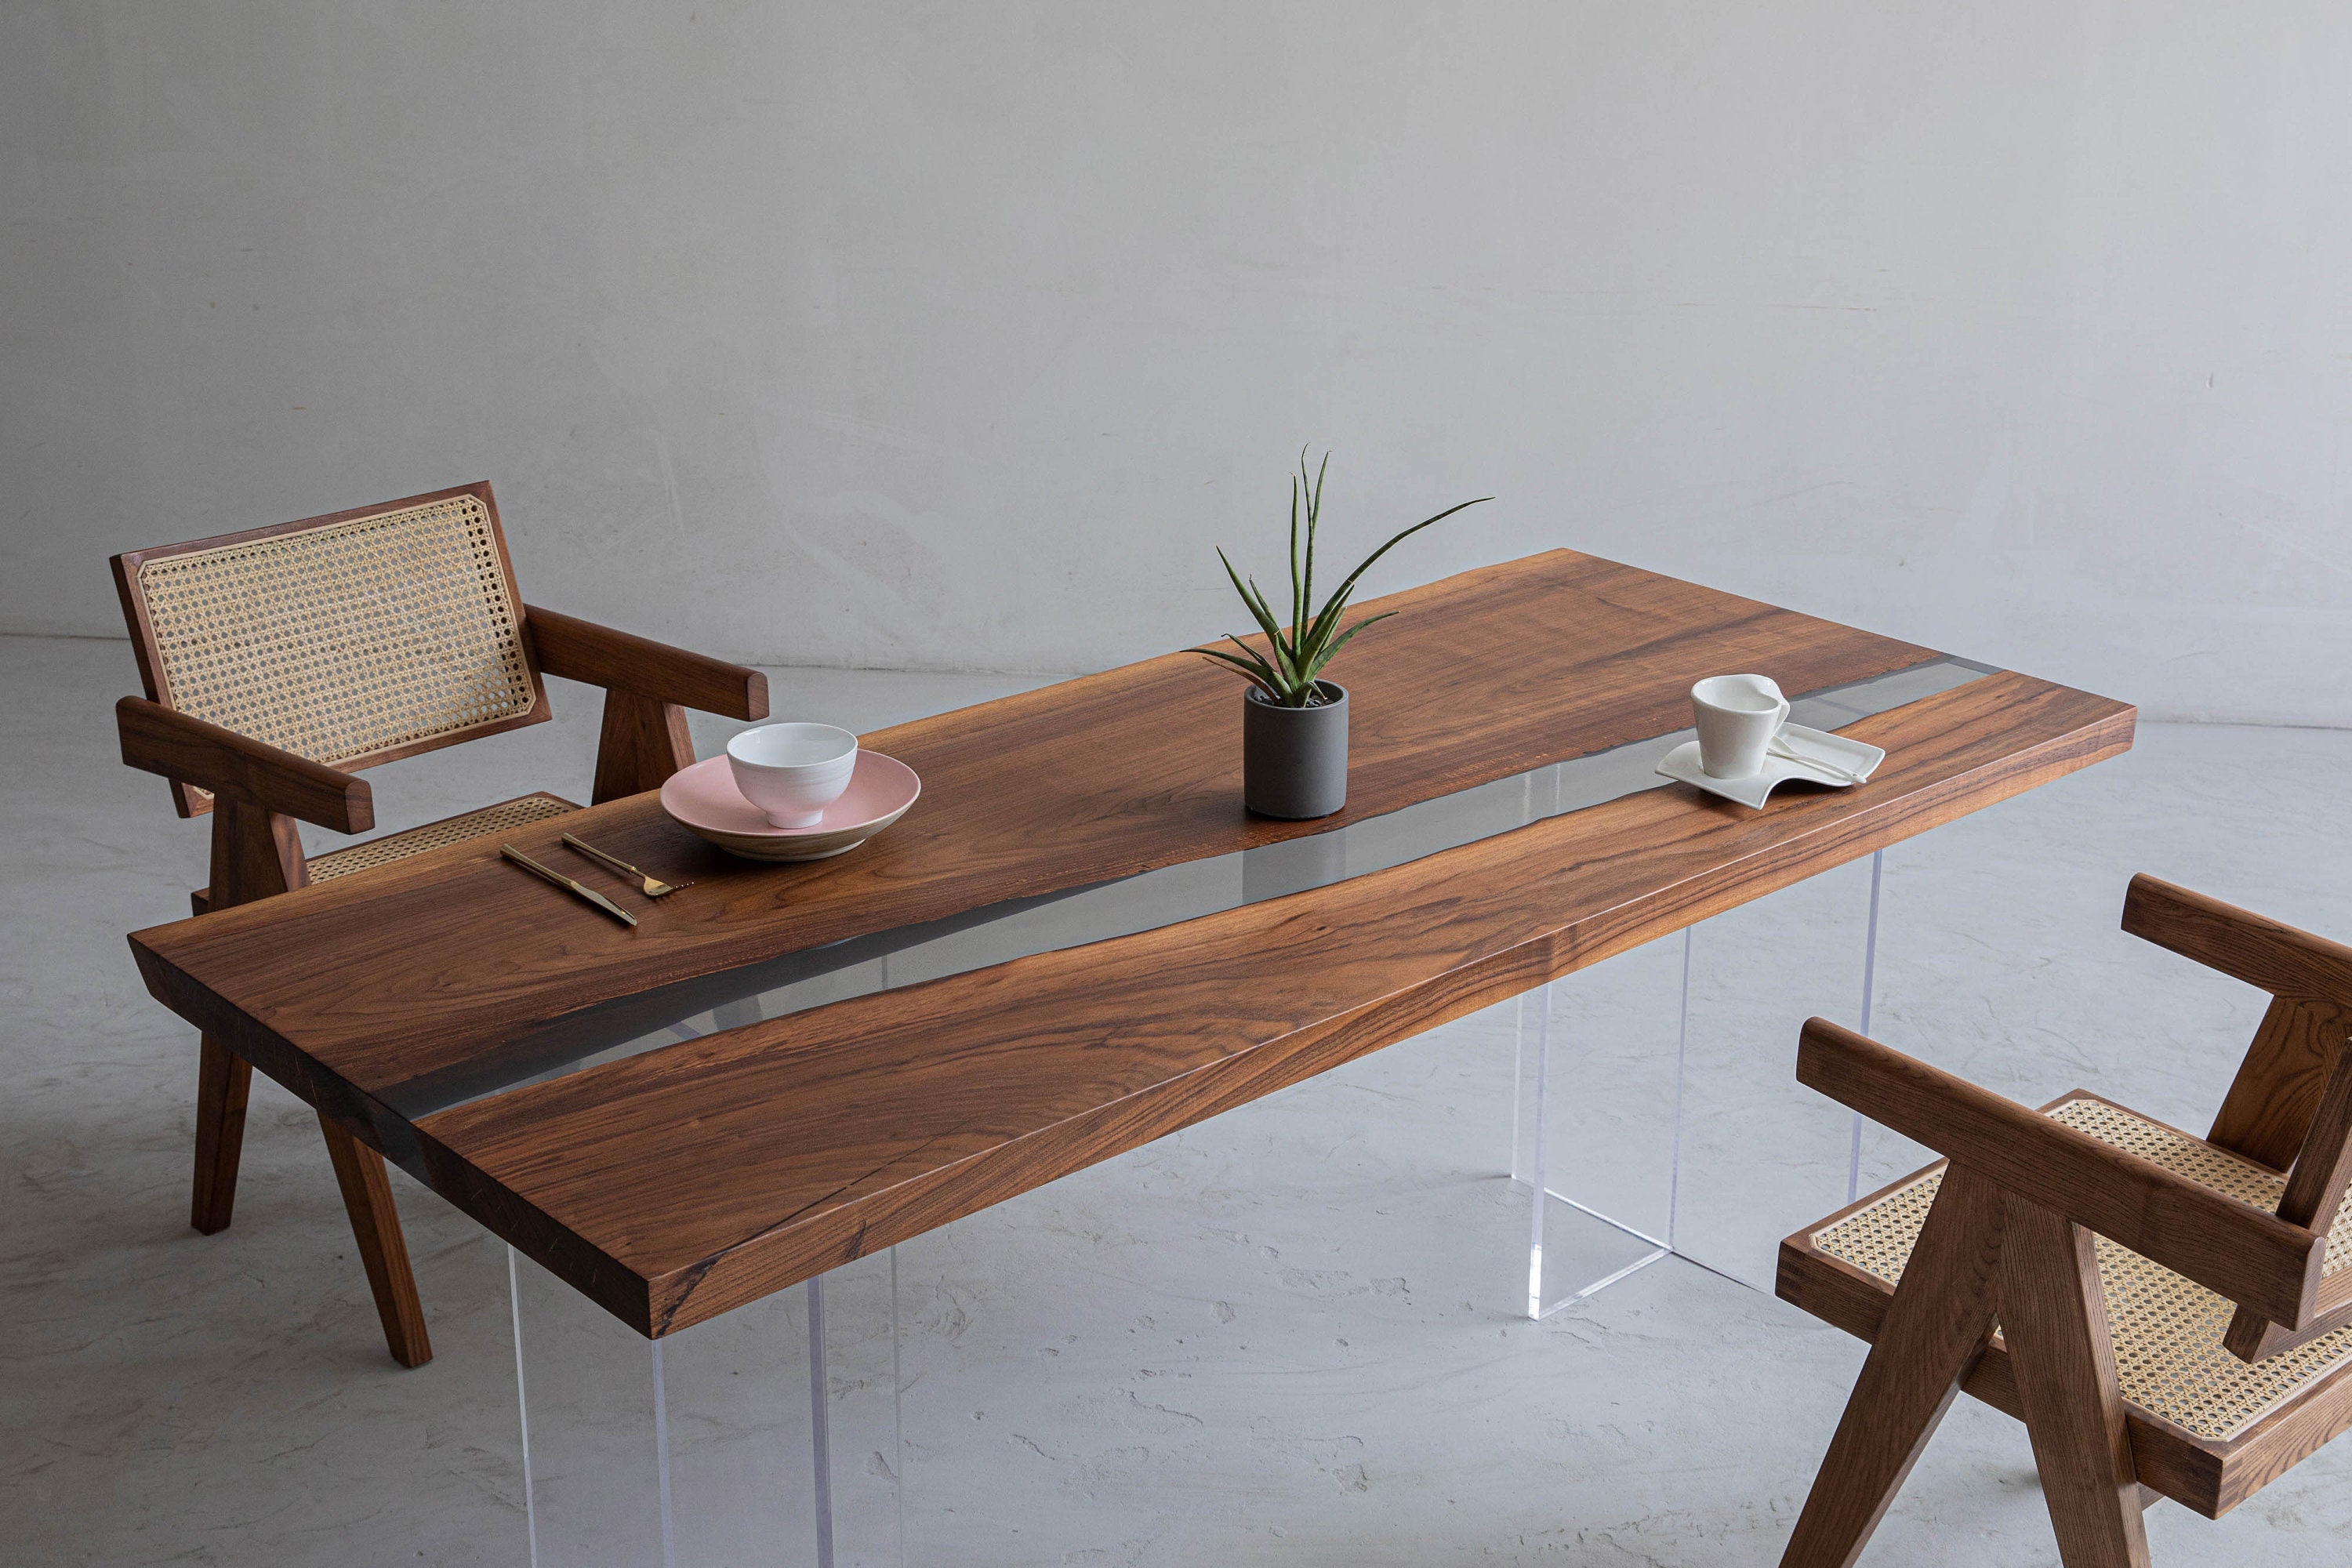 手作りエポキシテーブル、透明家具ビビッドエッジ、特殊エポキシ木樹脂テーブル